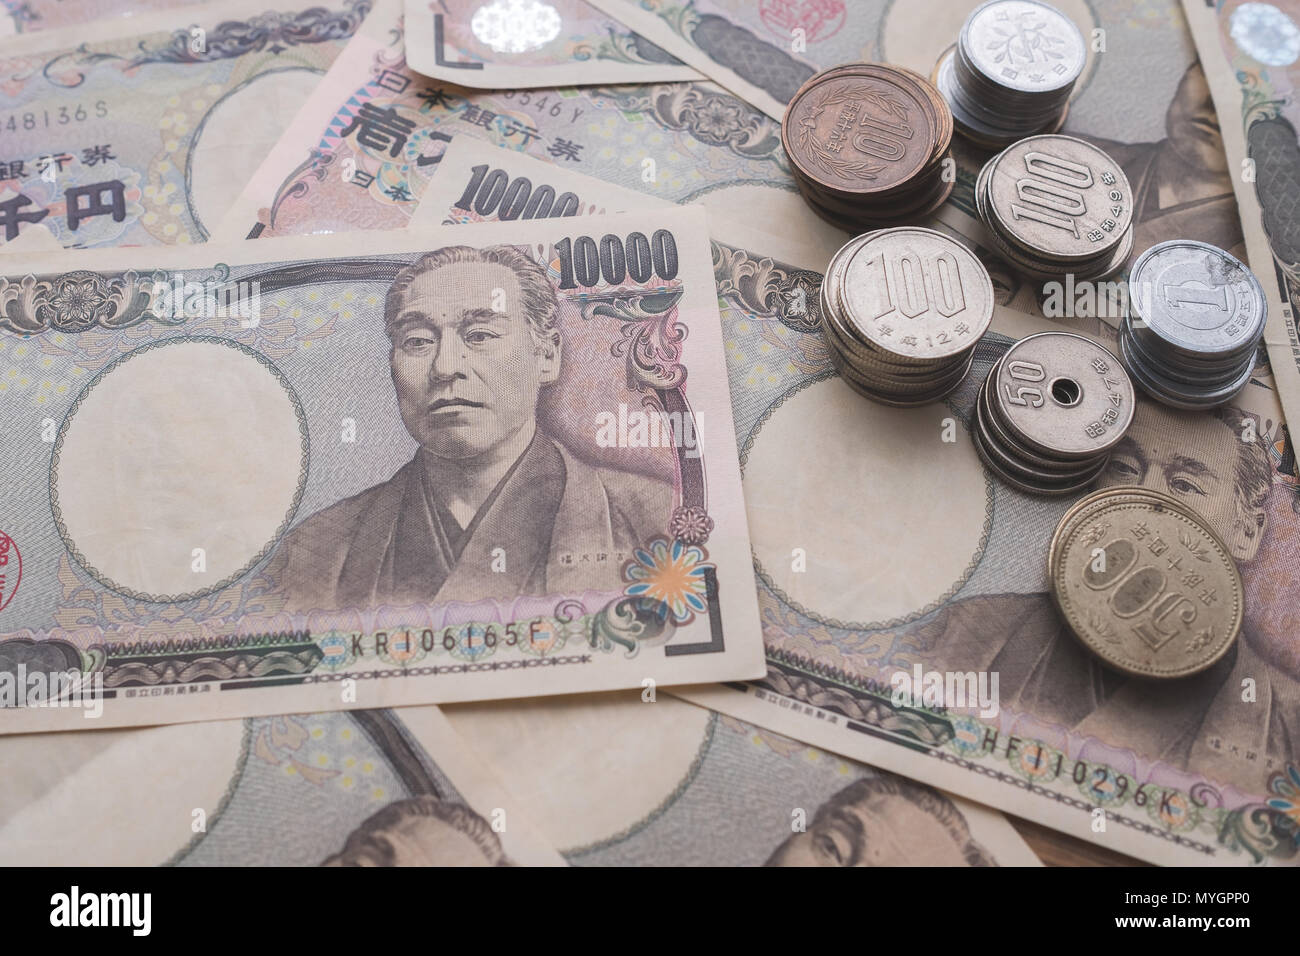 Yen japonais, billets de banque et pièces de monnaie sur la table Banque D'Images